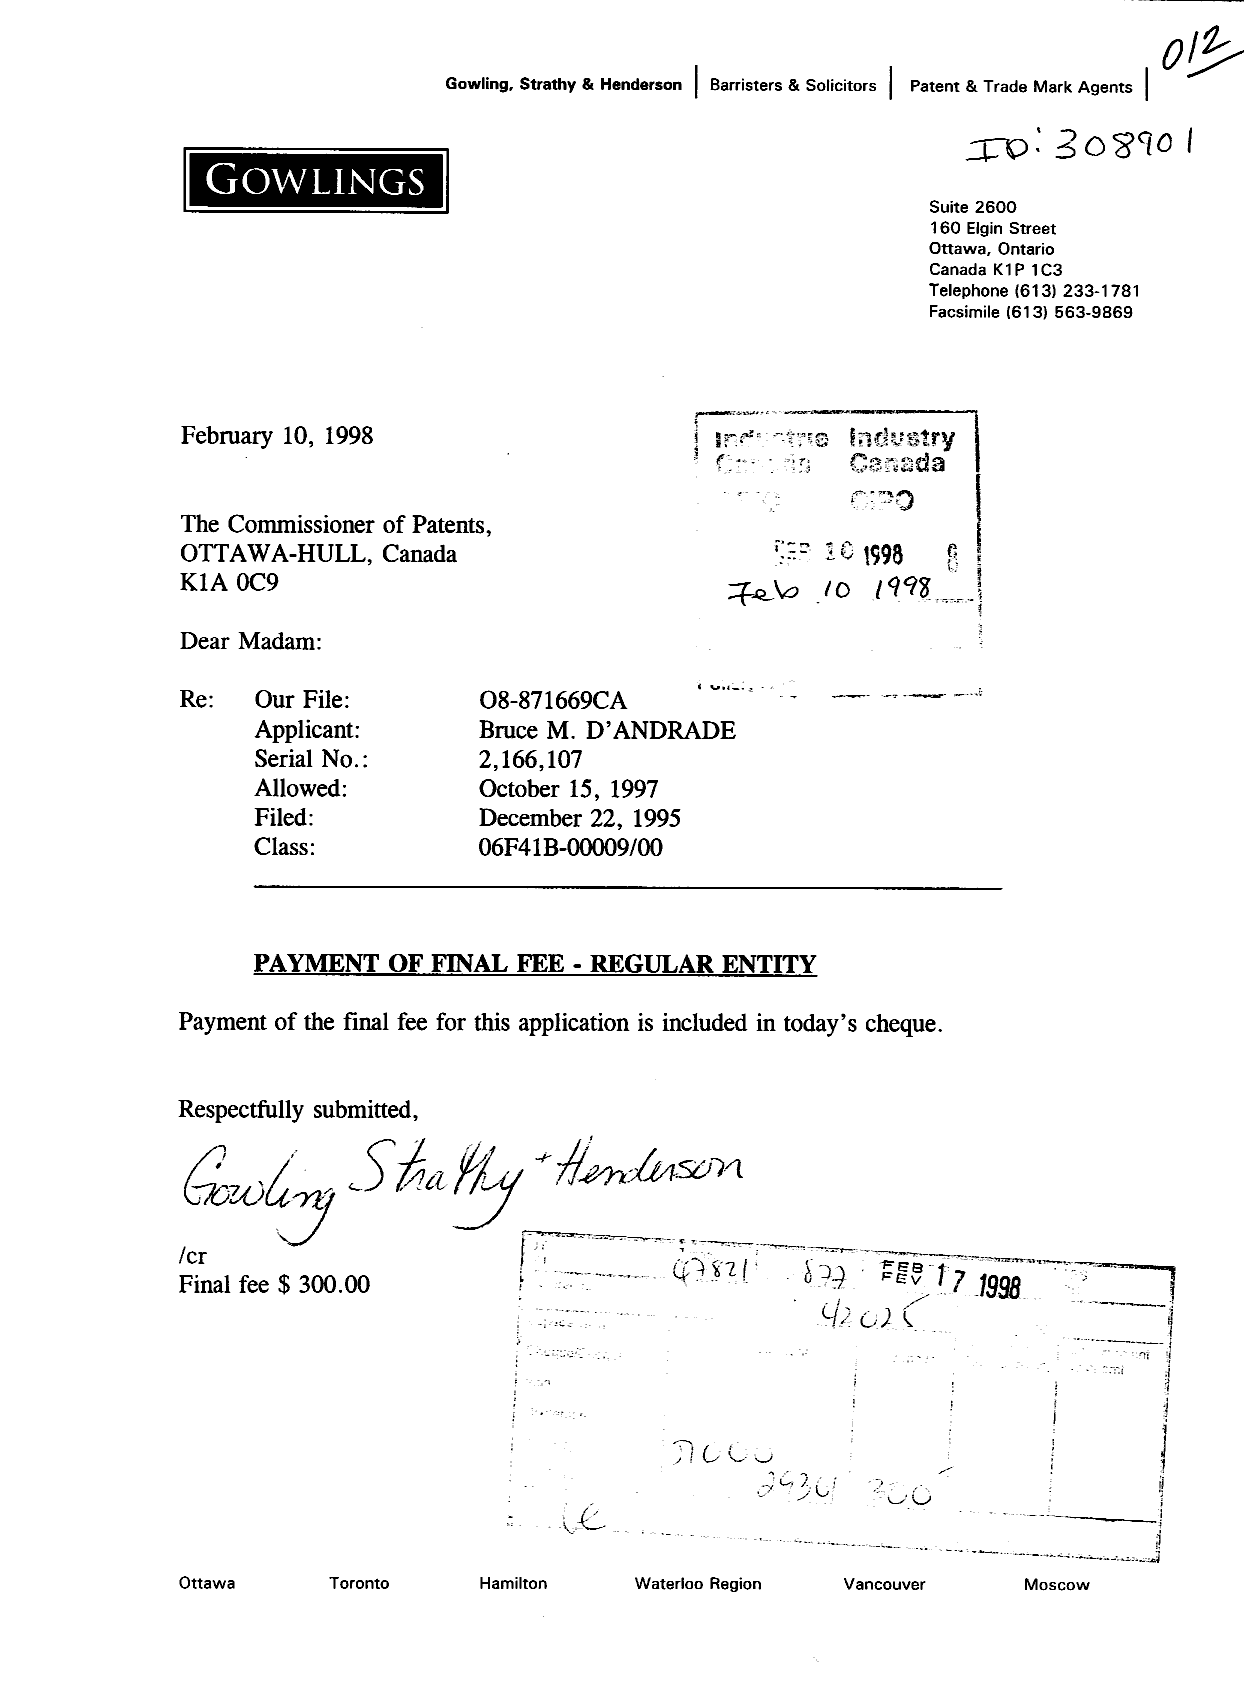 Document de brevet canadien 2166107. Correspondance 19980210. Image 1 de 1